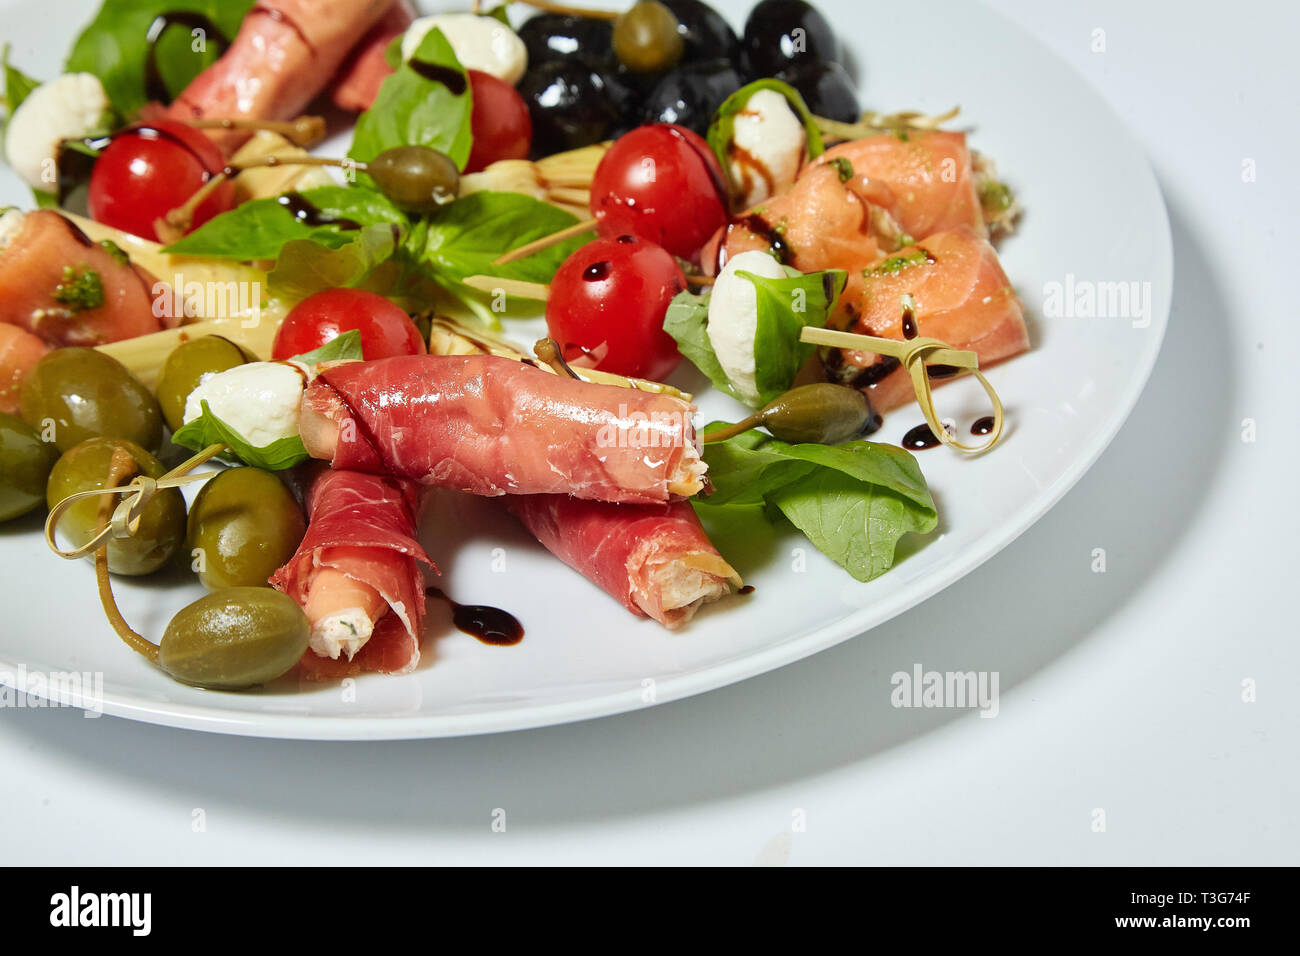 Salade de légumes aux olives, câpres, viande et petits pains. Isolé sur fond blanc. Banque D'Images